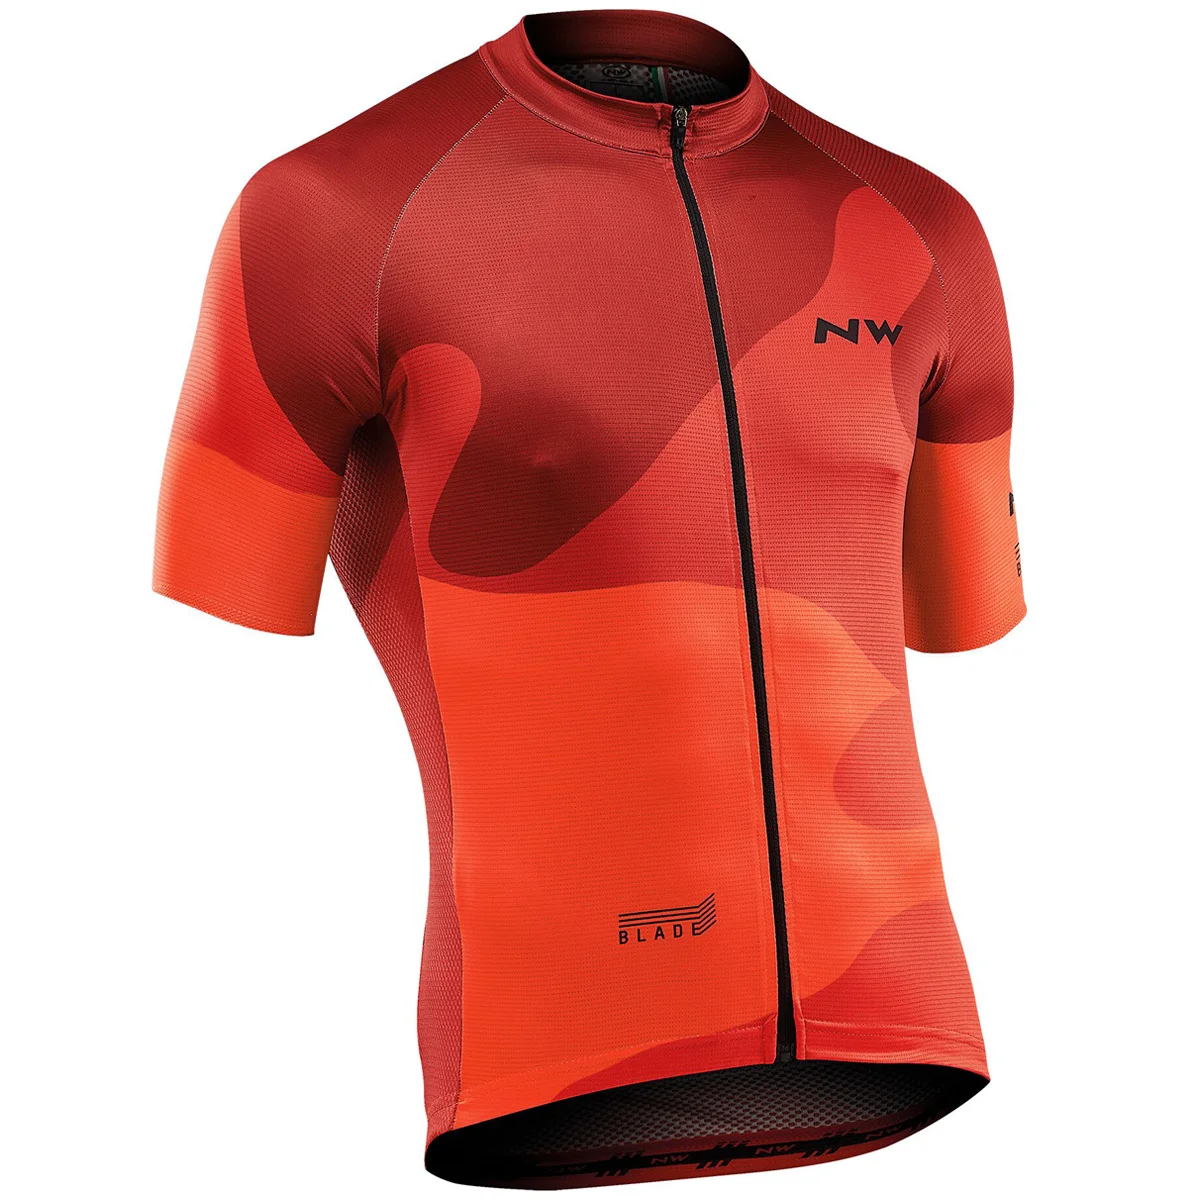 Northwave NW велосипедная майка, мужская стильная одежда с коротким рукавом, спортивная одежда, уличная одежда для горного велосипеда, ropa de ciclismo - Цвет: 14